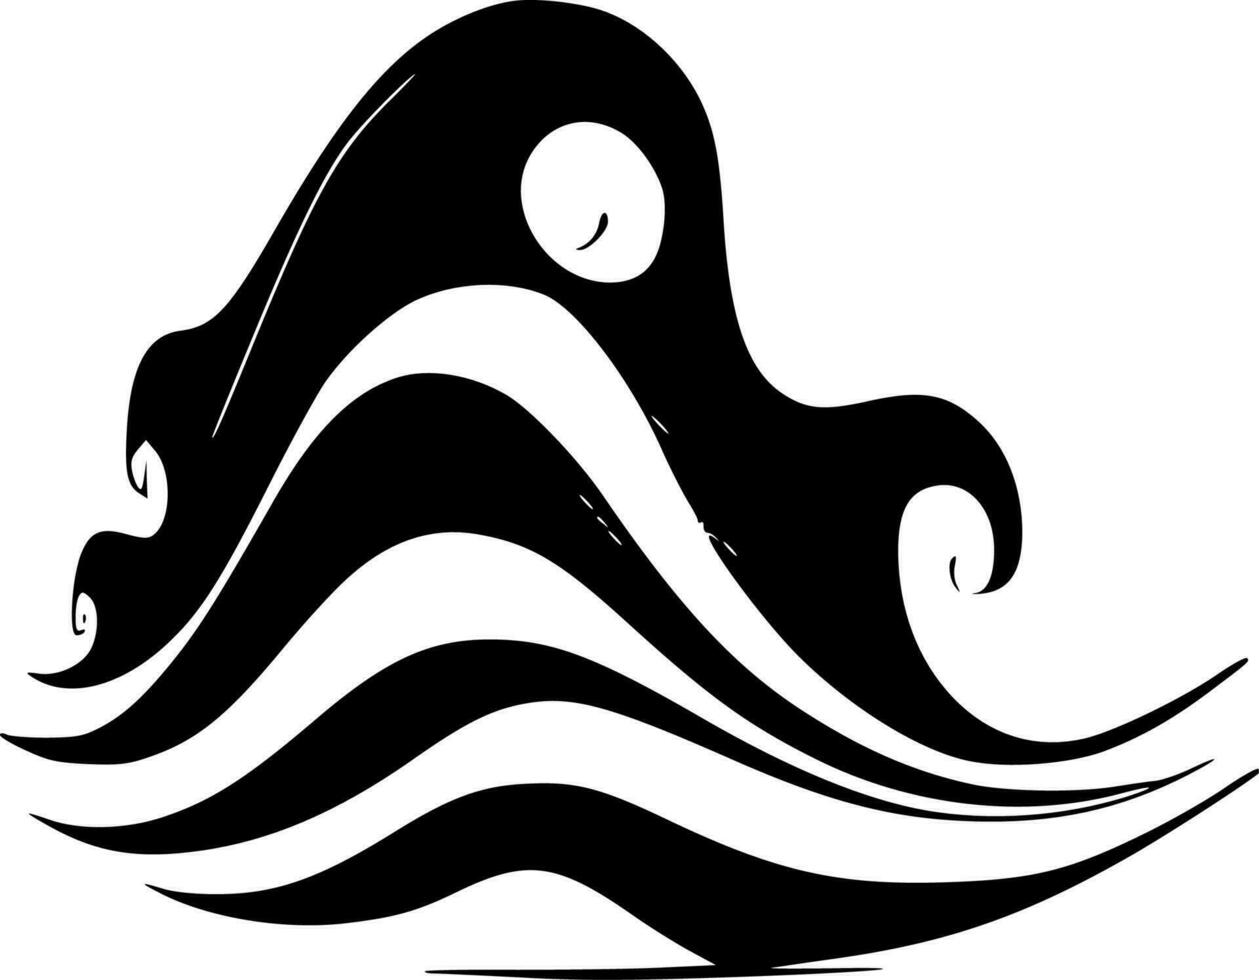 golven, zwart en wit vector illustratie